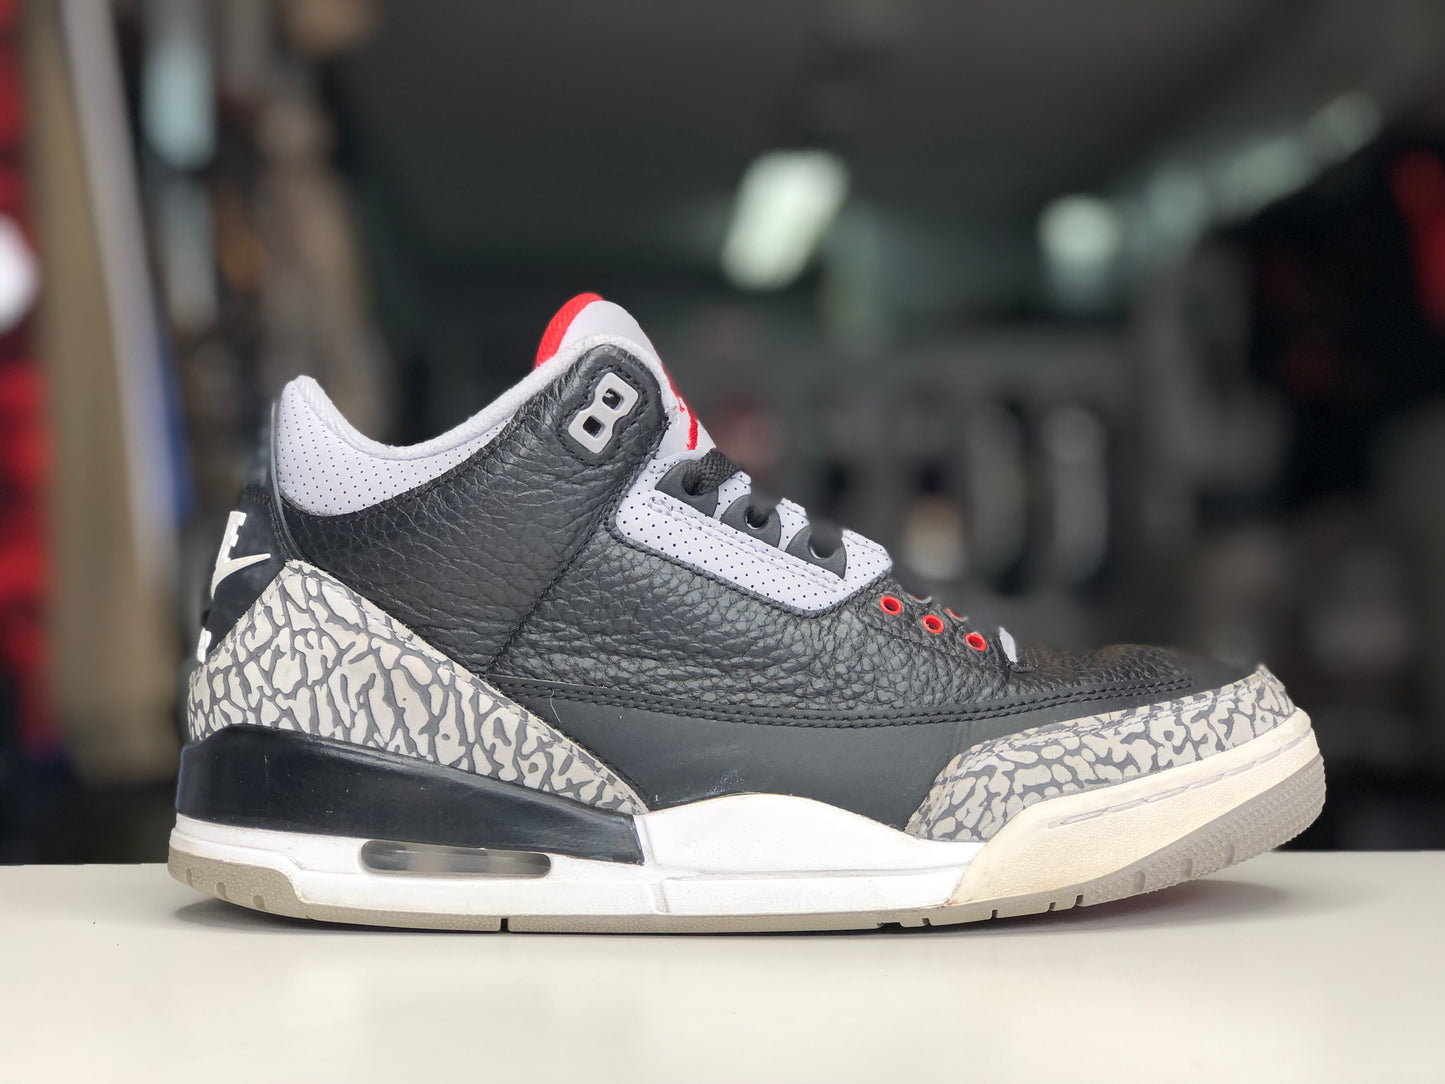 Jordan 3 OG Black Cement 2018 size 9.5